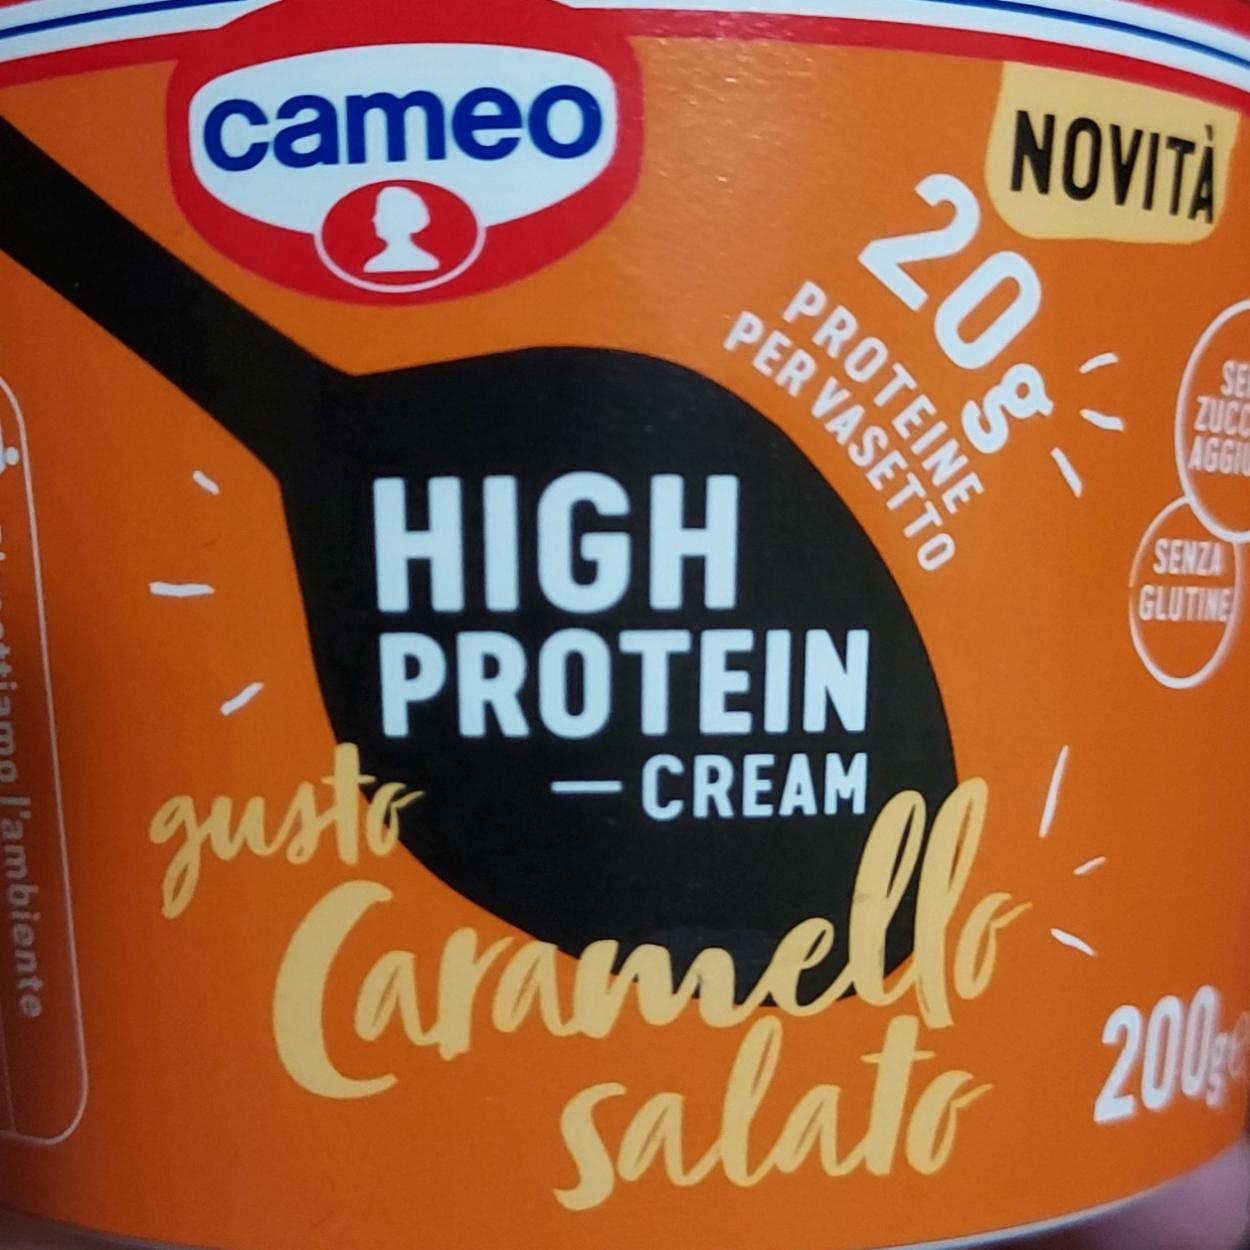 Fotografie - High Protein Cream gusto Caramello Salto Cameo